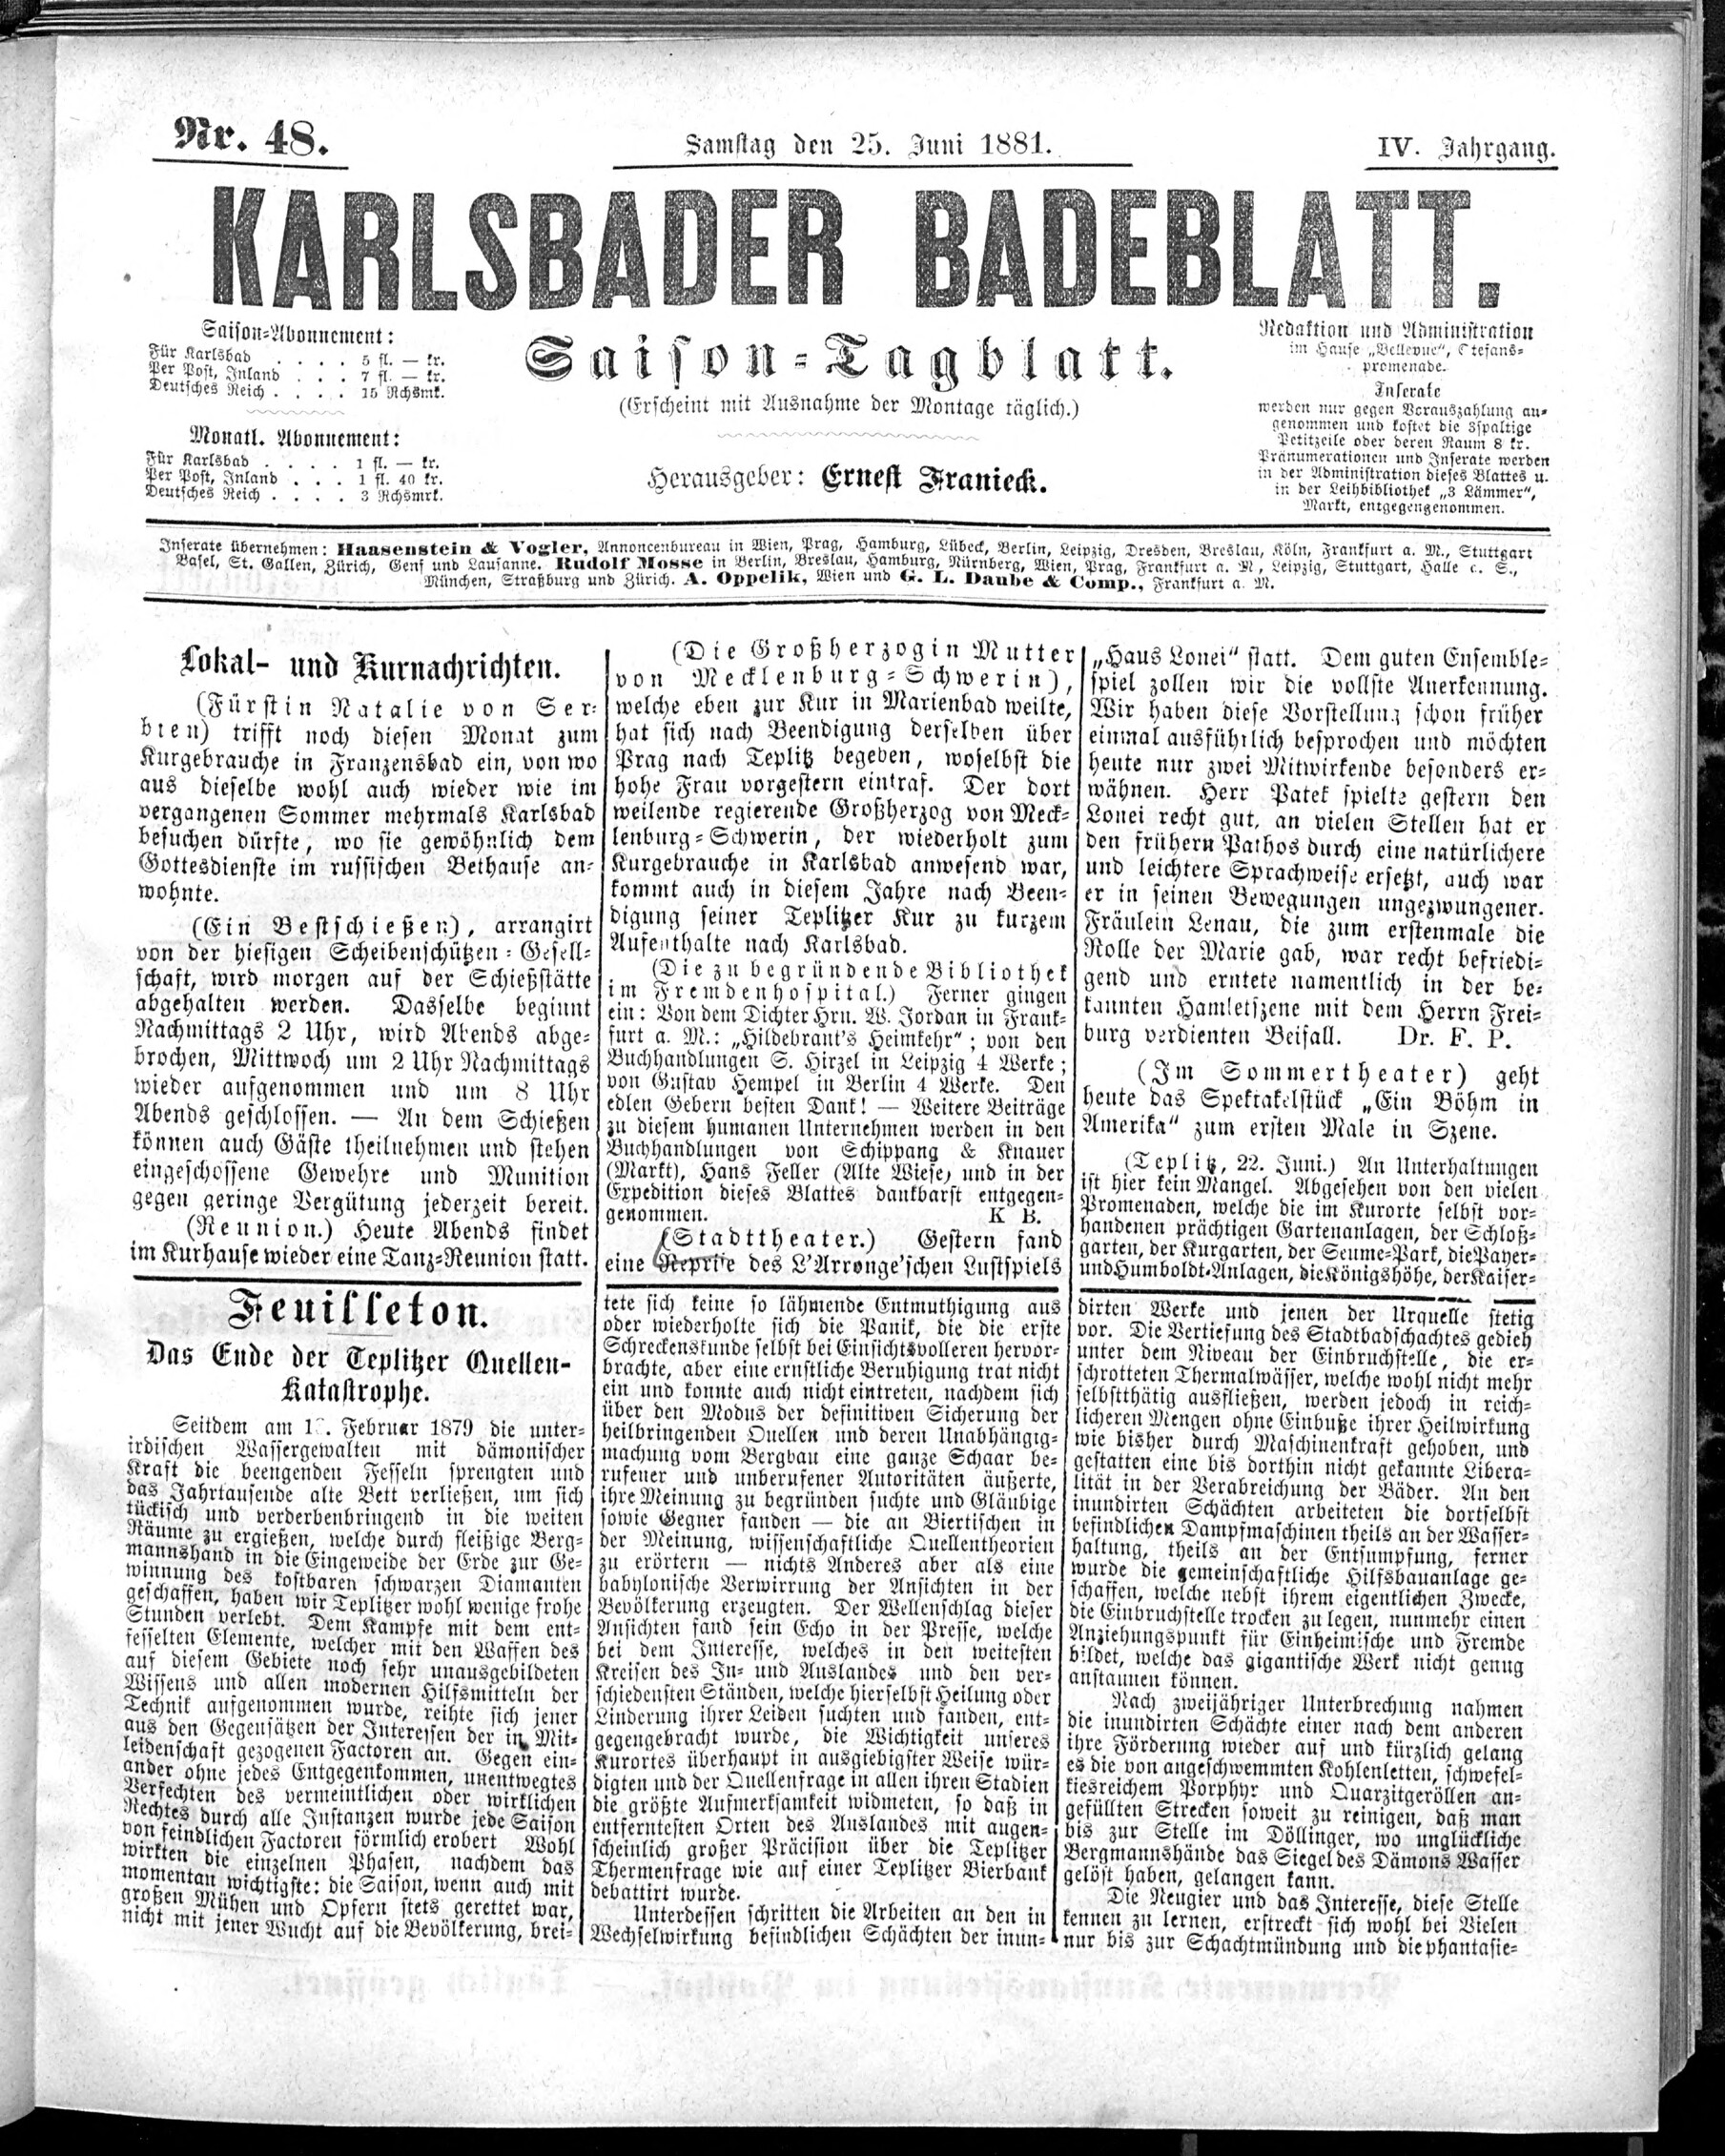 1. karlsbader-badeblatt-1881-06-25-n48_1005